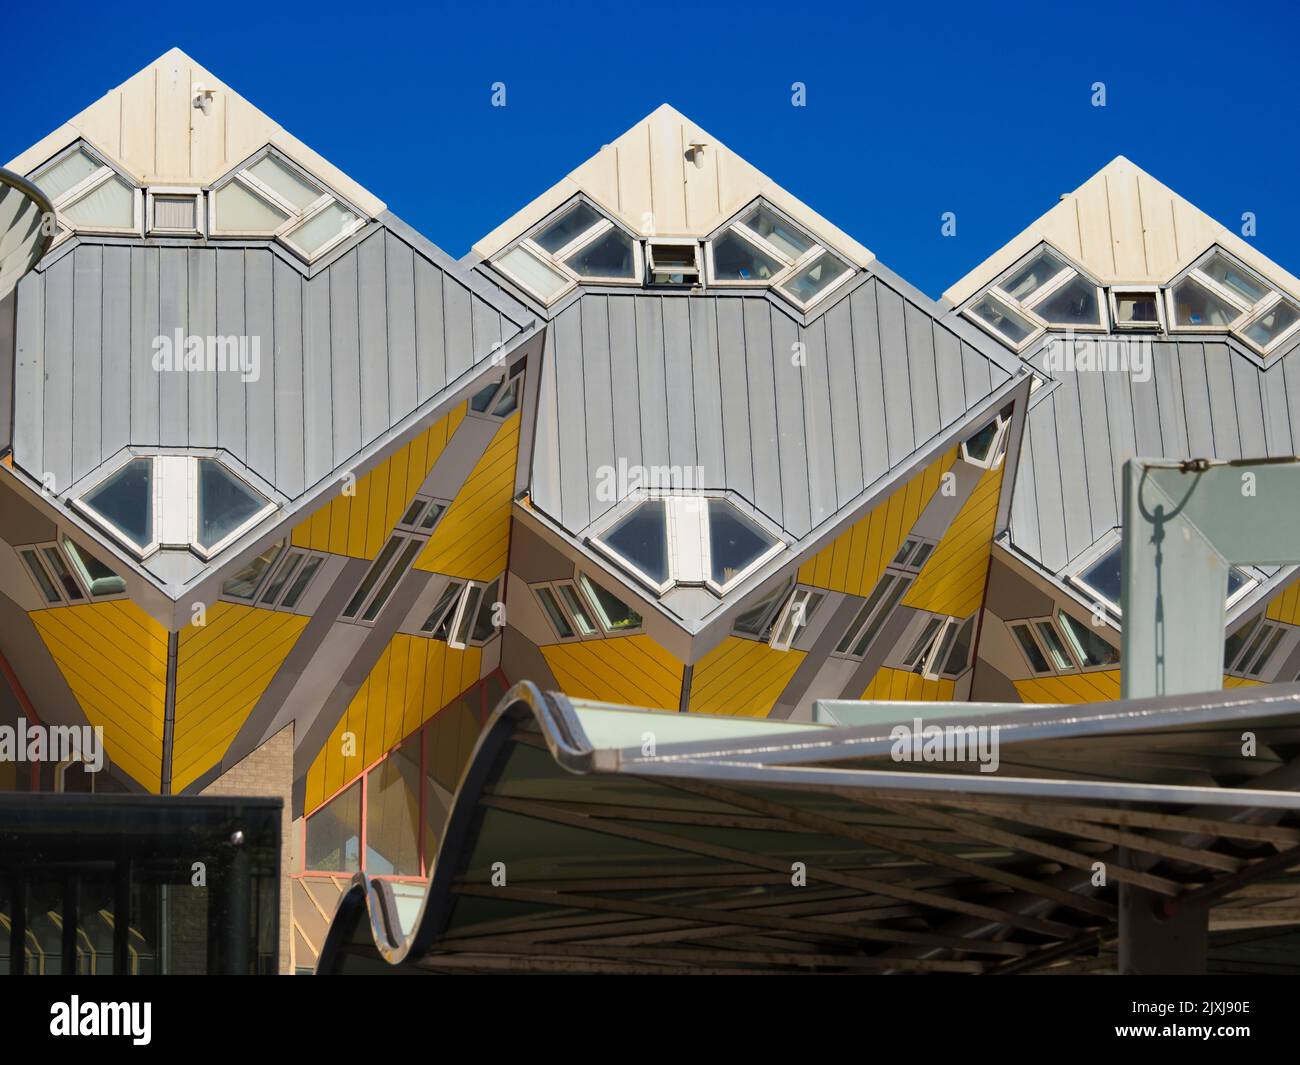 Frente al Centrum Markt en Rotterdam, Holanda, estas distintivas casas de cubos se han convertido rápidamente en favoritos locales e imanes turísticos. Foto de stock